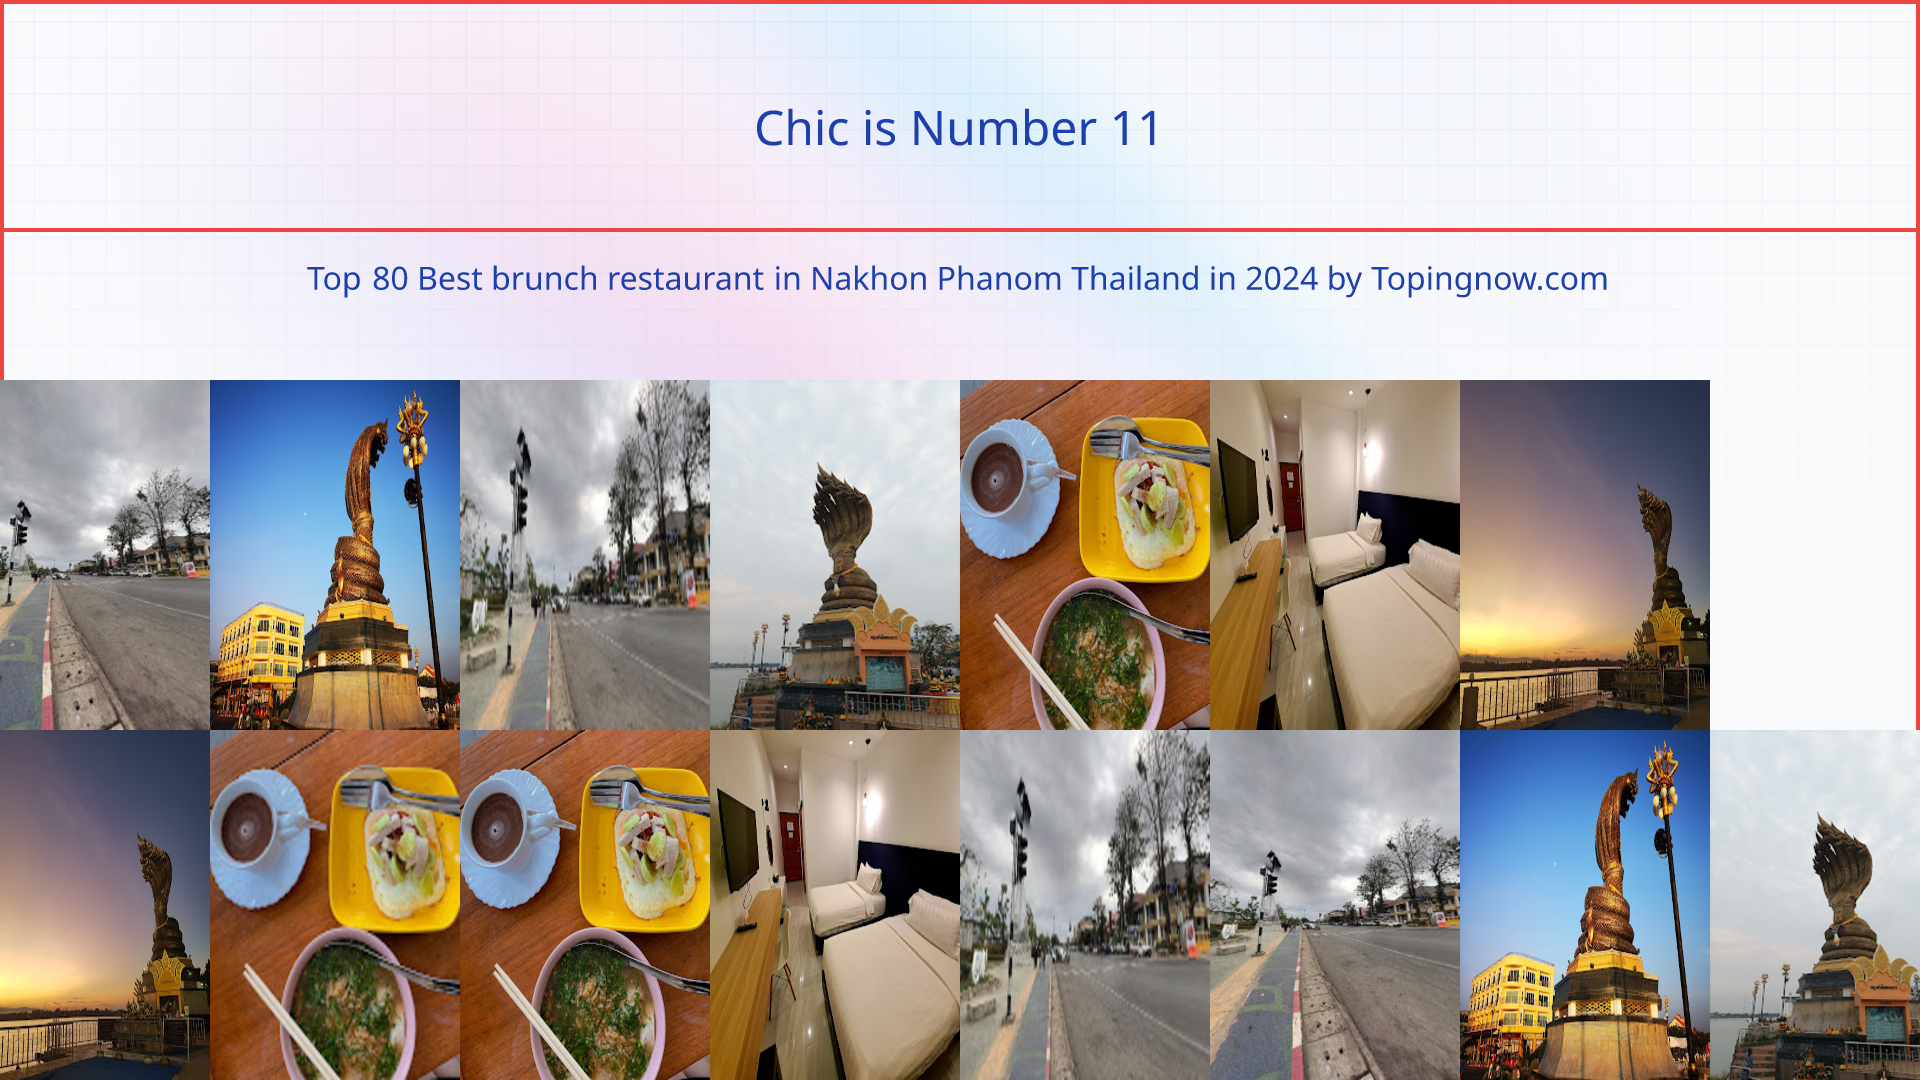 Chic: Top 80 Best brunch restaurant in Nakhon Phanom Thailand in 2024